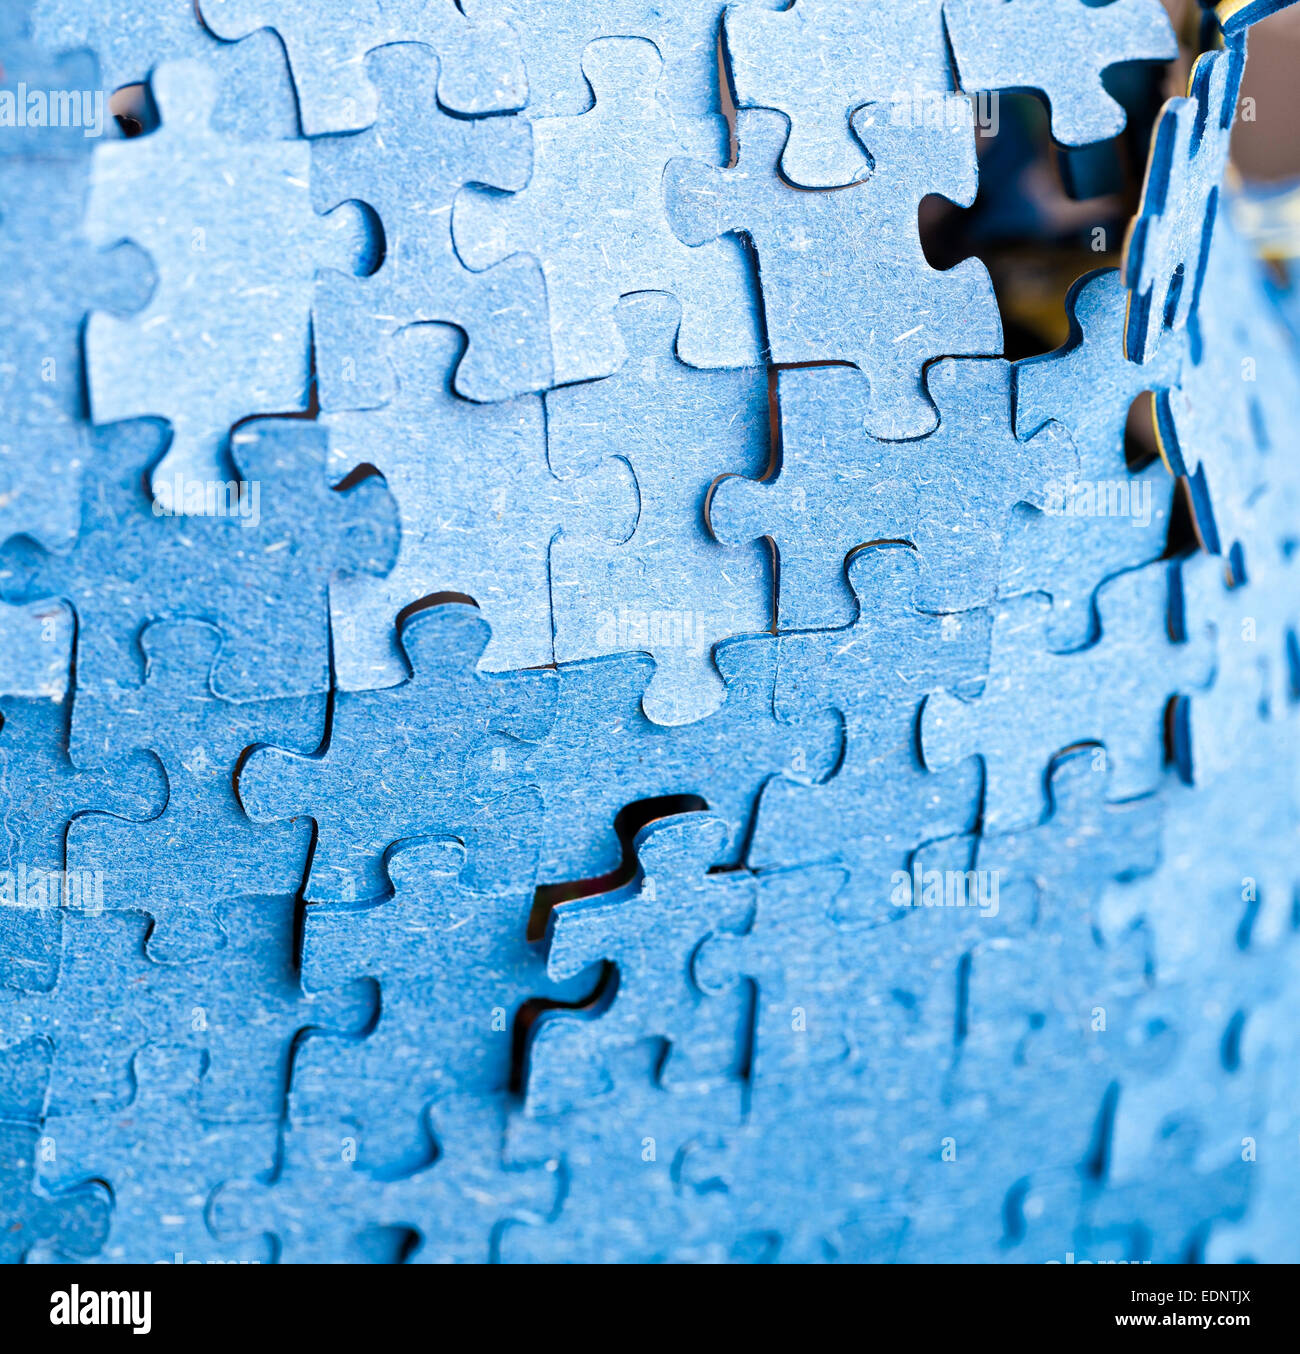 Echtes Foto von der Rückseite des blauen Puzzle Puzzle bei vorhandenem Licht. Stockfoto